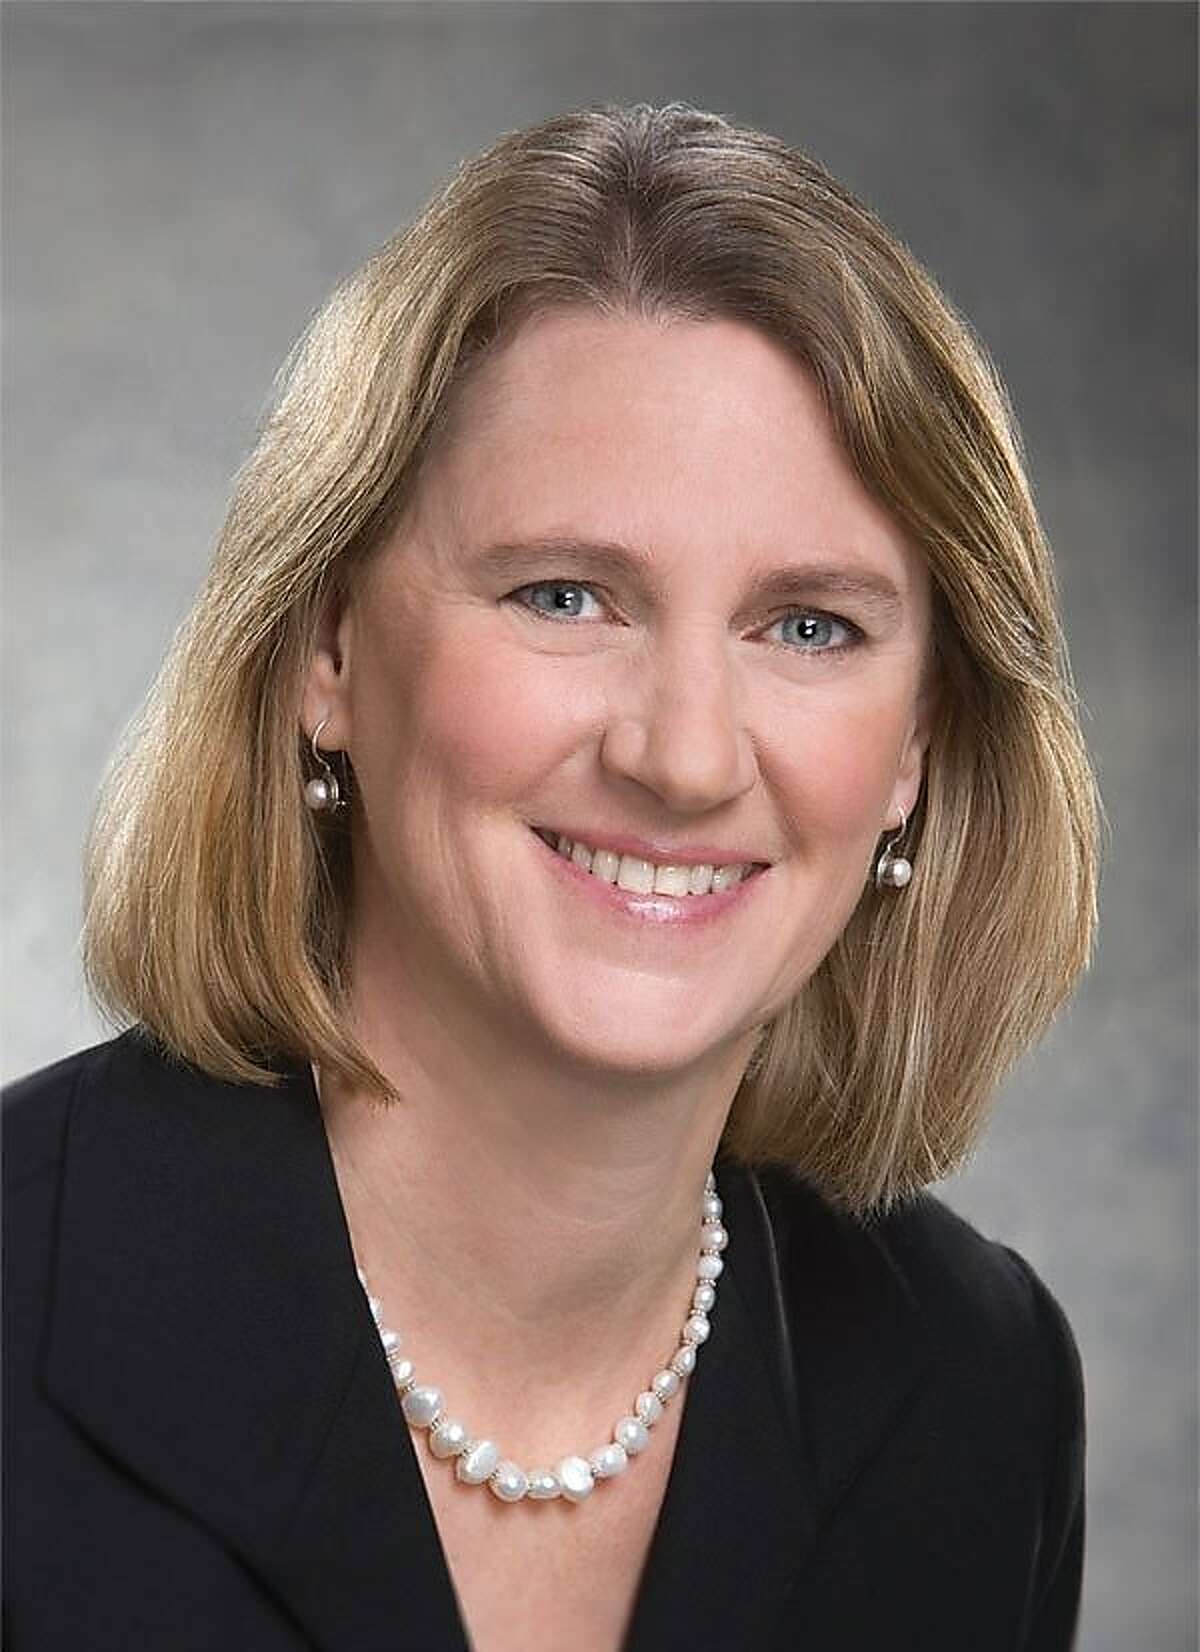 Calpers' CEO Anne Stausboll